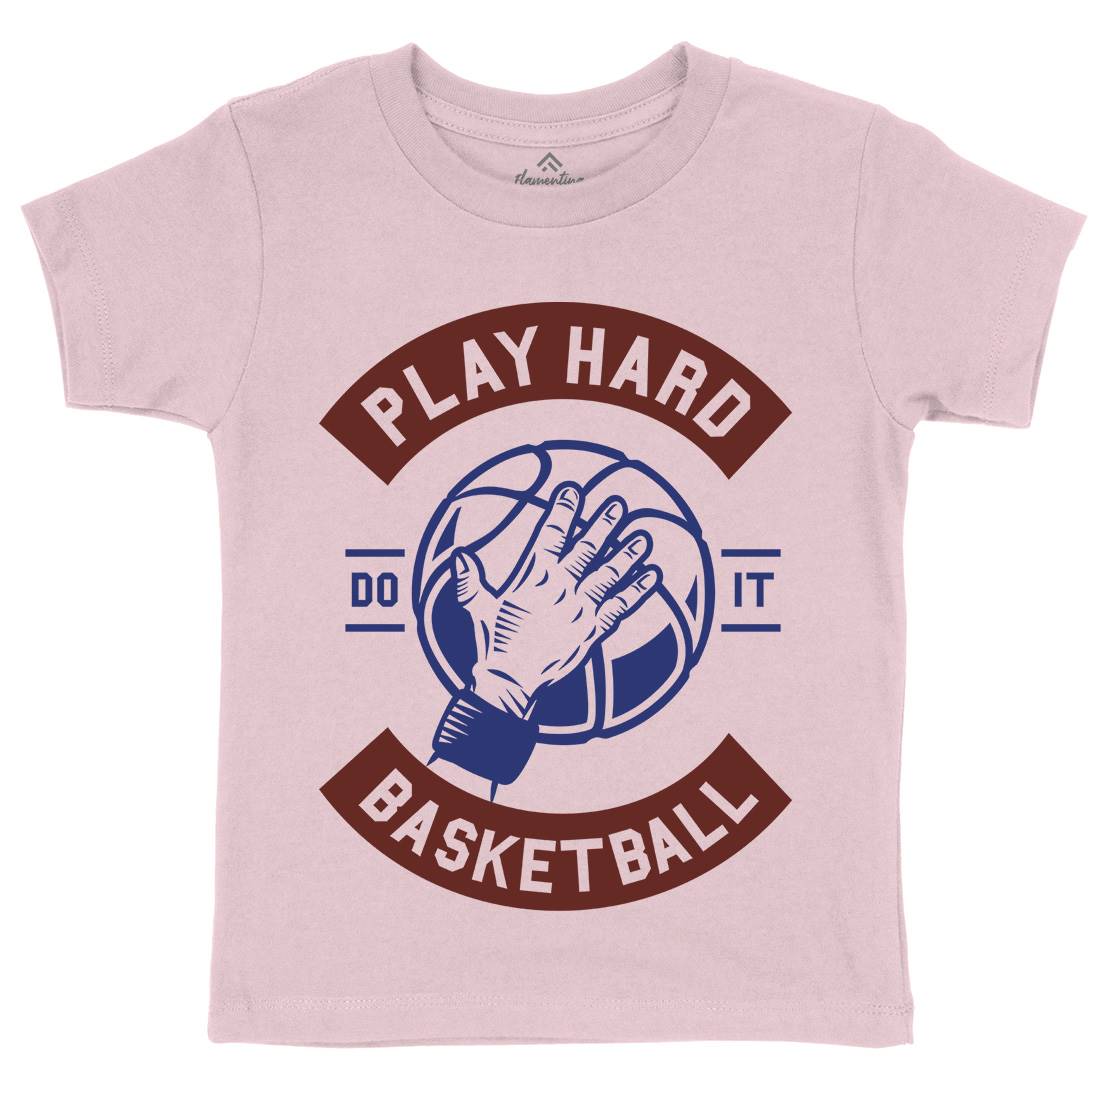 Play Hard Basketball Kids Organic Crew Neck T-Shirt Sport A261